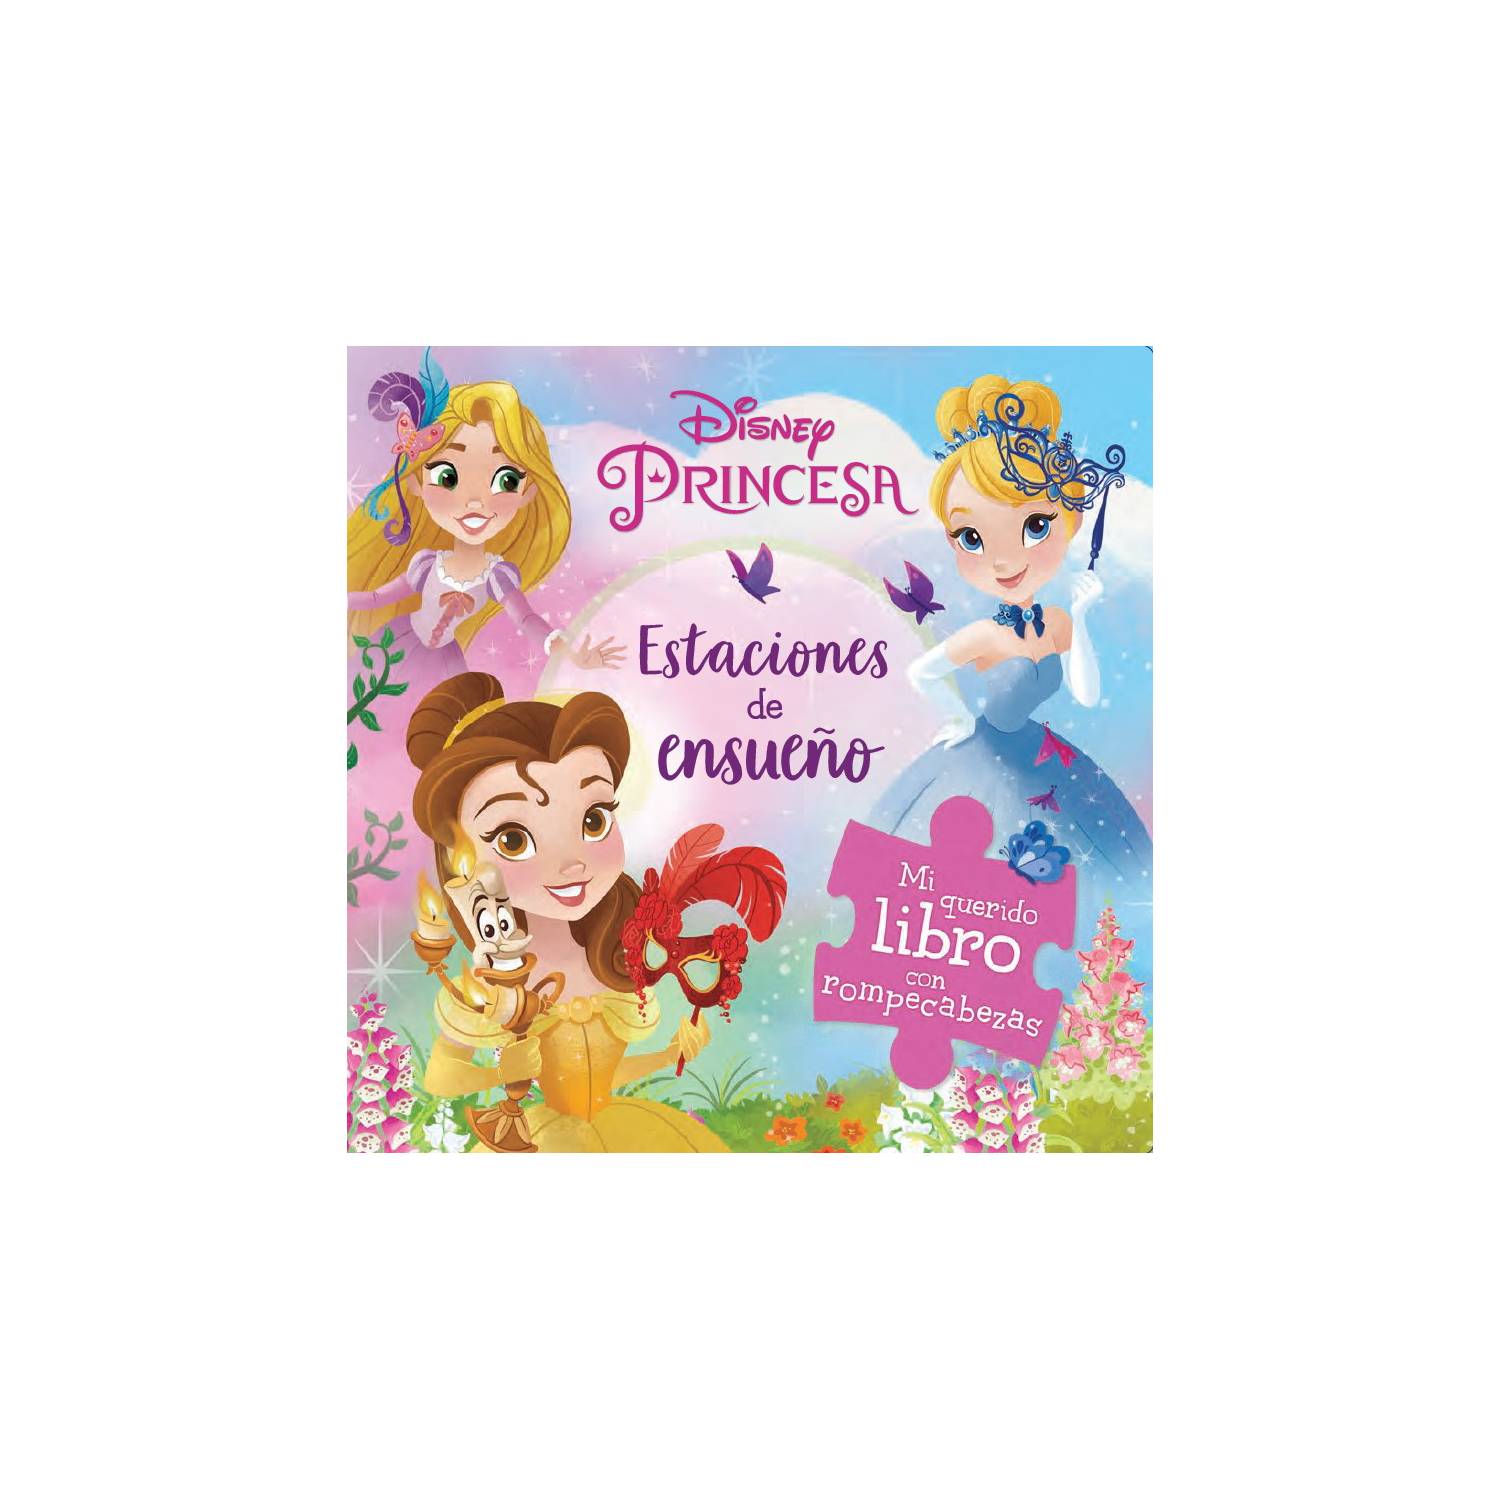 Universo literario de Disney llega en una colección infantil de EL